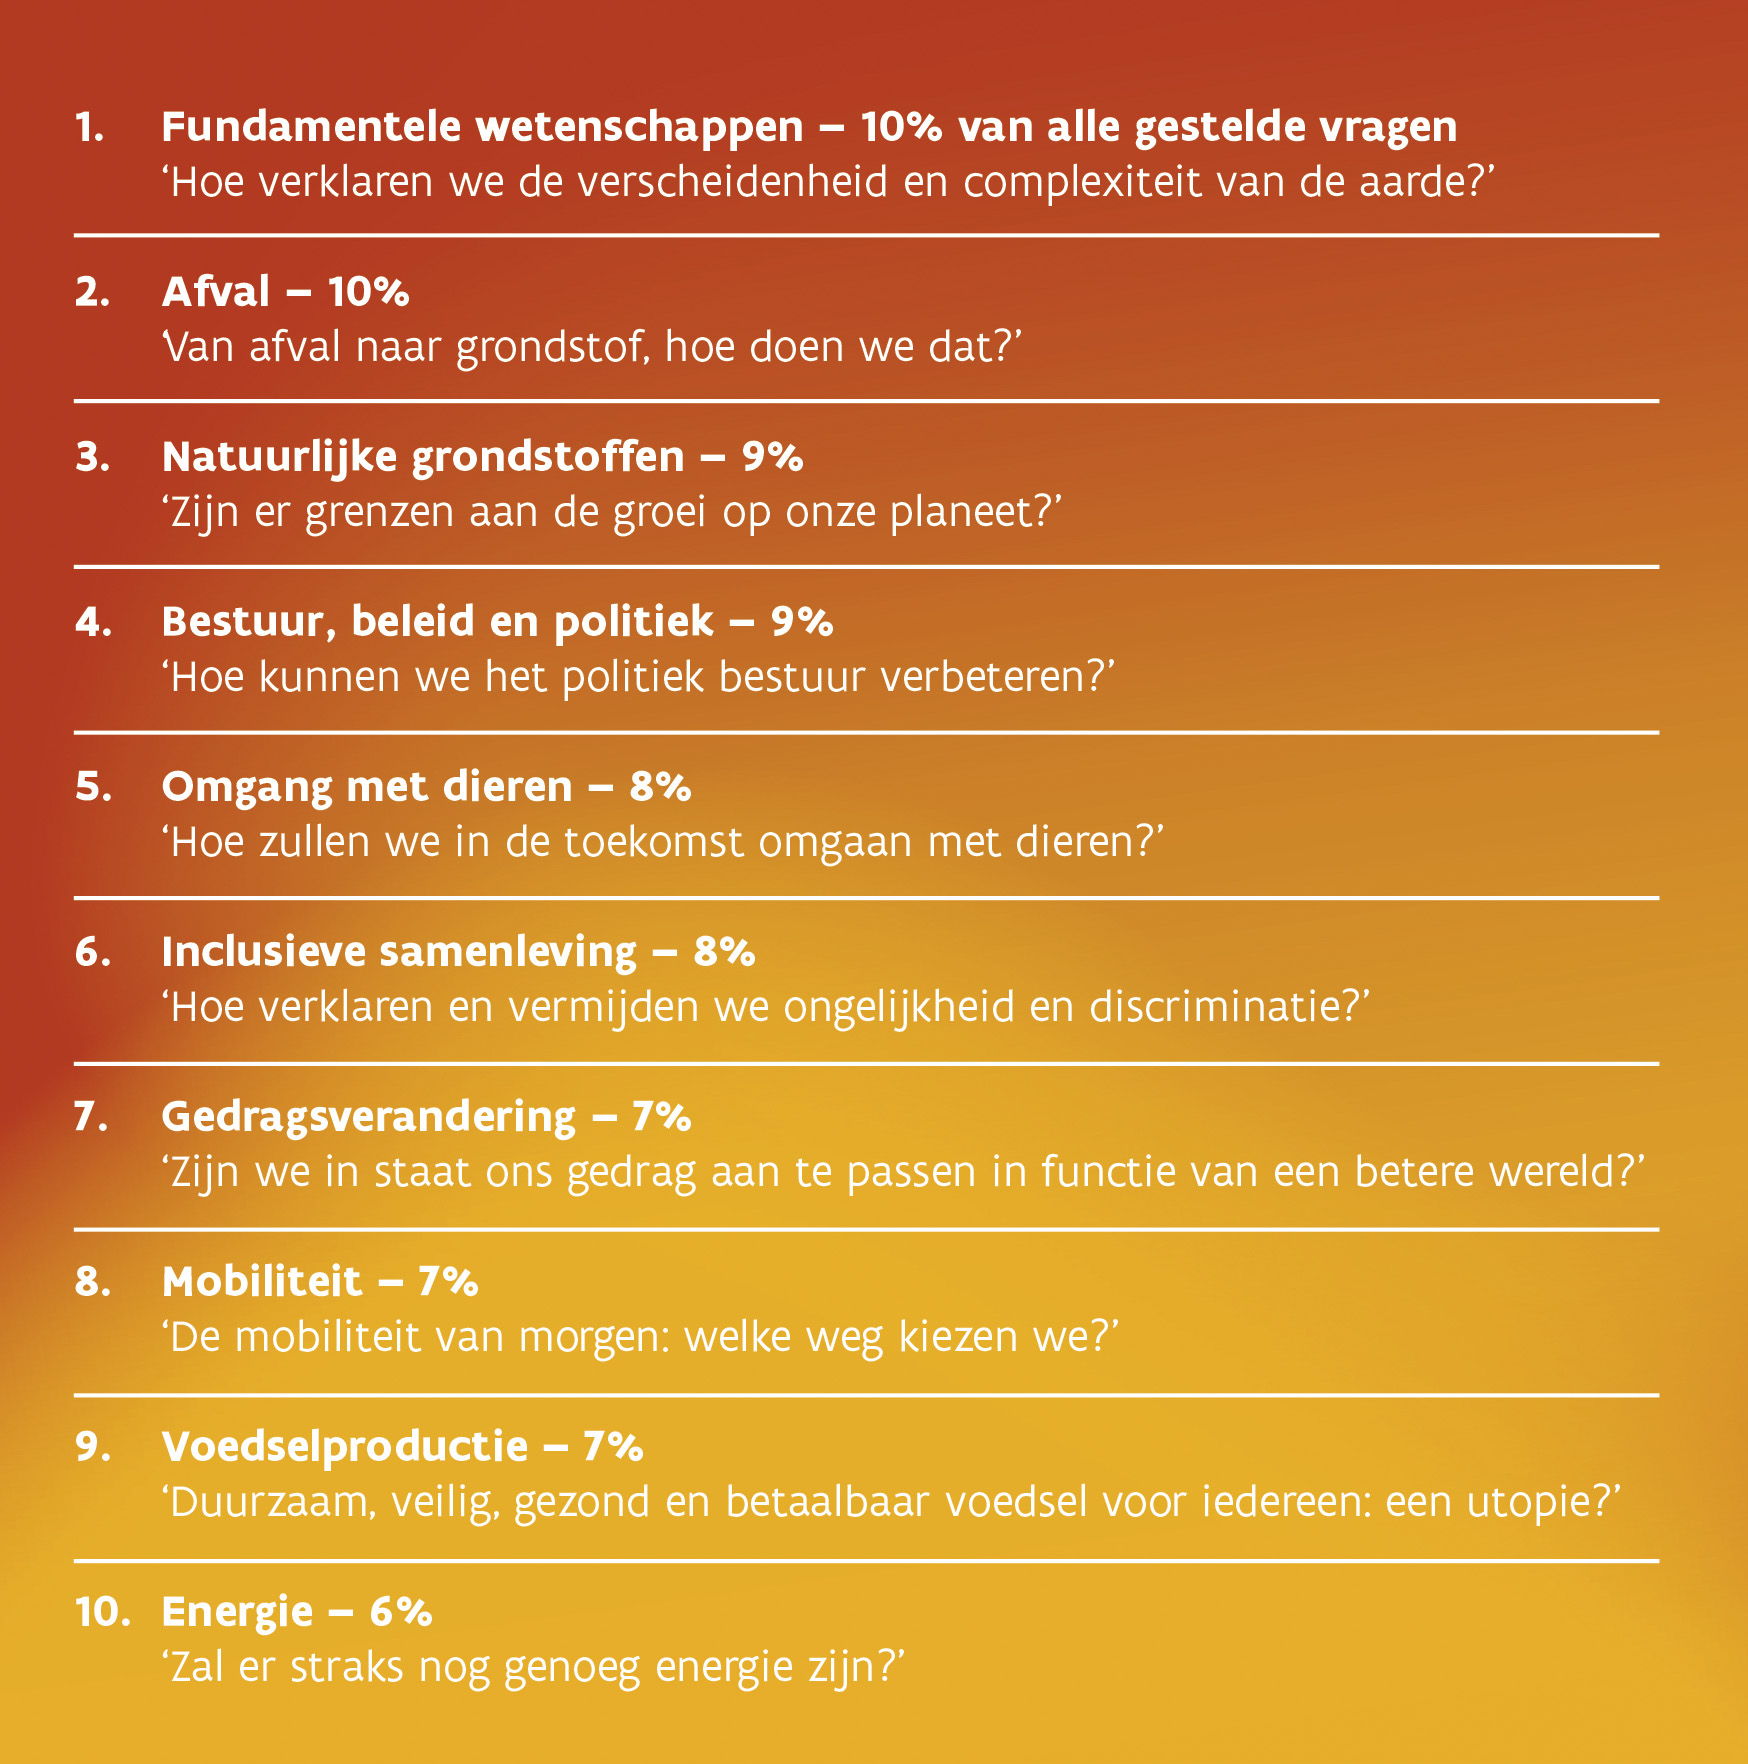 Top 10 thema's uit de Vlaamse Wetenschapsagenda. Het percentage vragen ​
gelinkt aan het thema en een samenvattende vraag worden meegegeven.